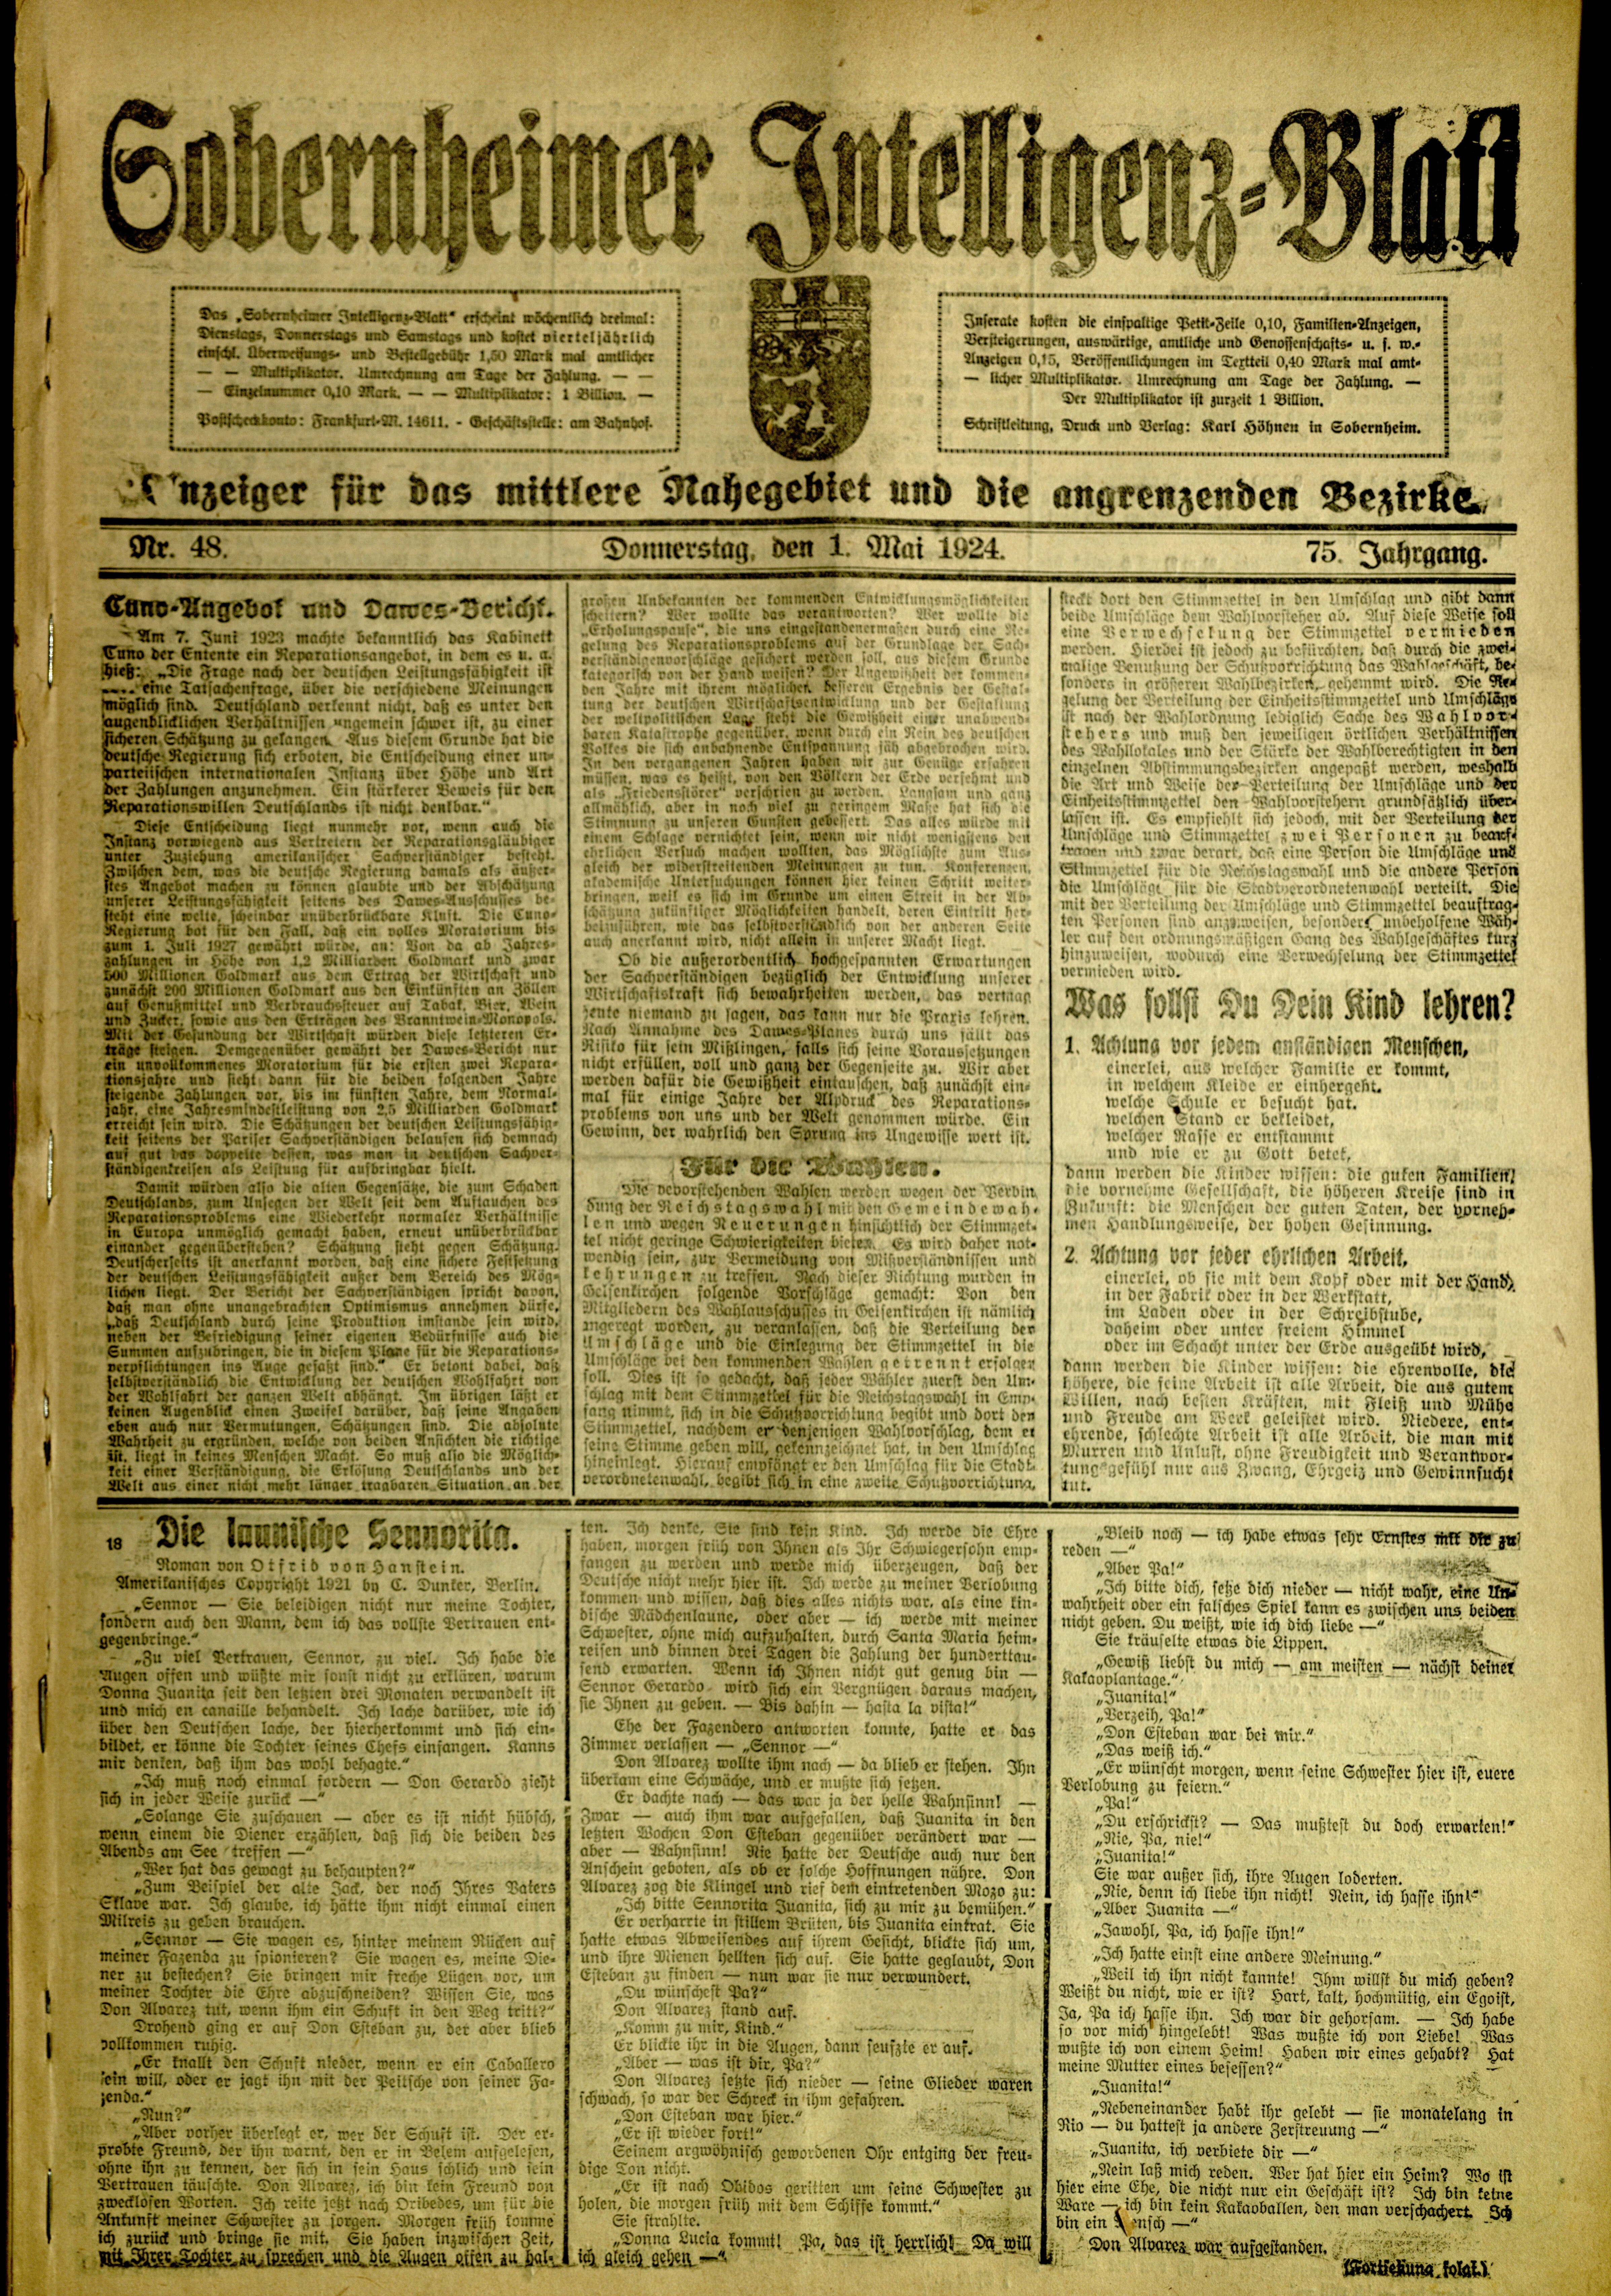 Zeitung: Sobernheimer Intelligenzblatt; Mai 1924, Jg. 73 Nr. 48 (Heimatmuseum Bad Sobernheim CC BY-NC-SA)